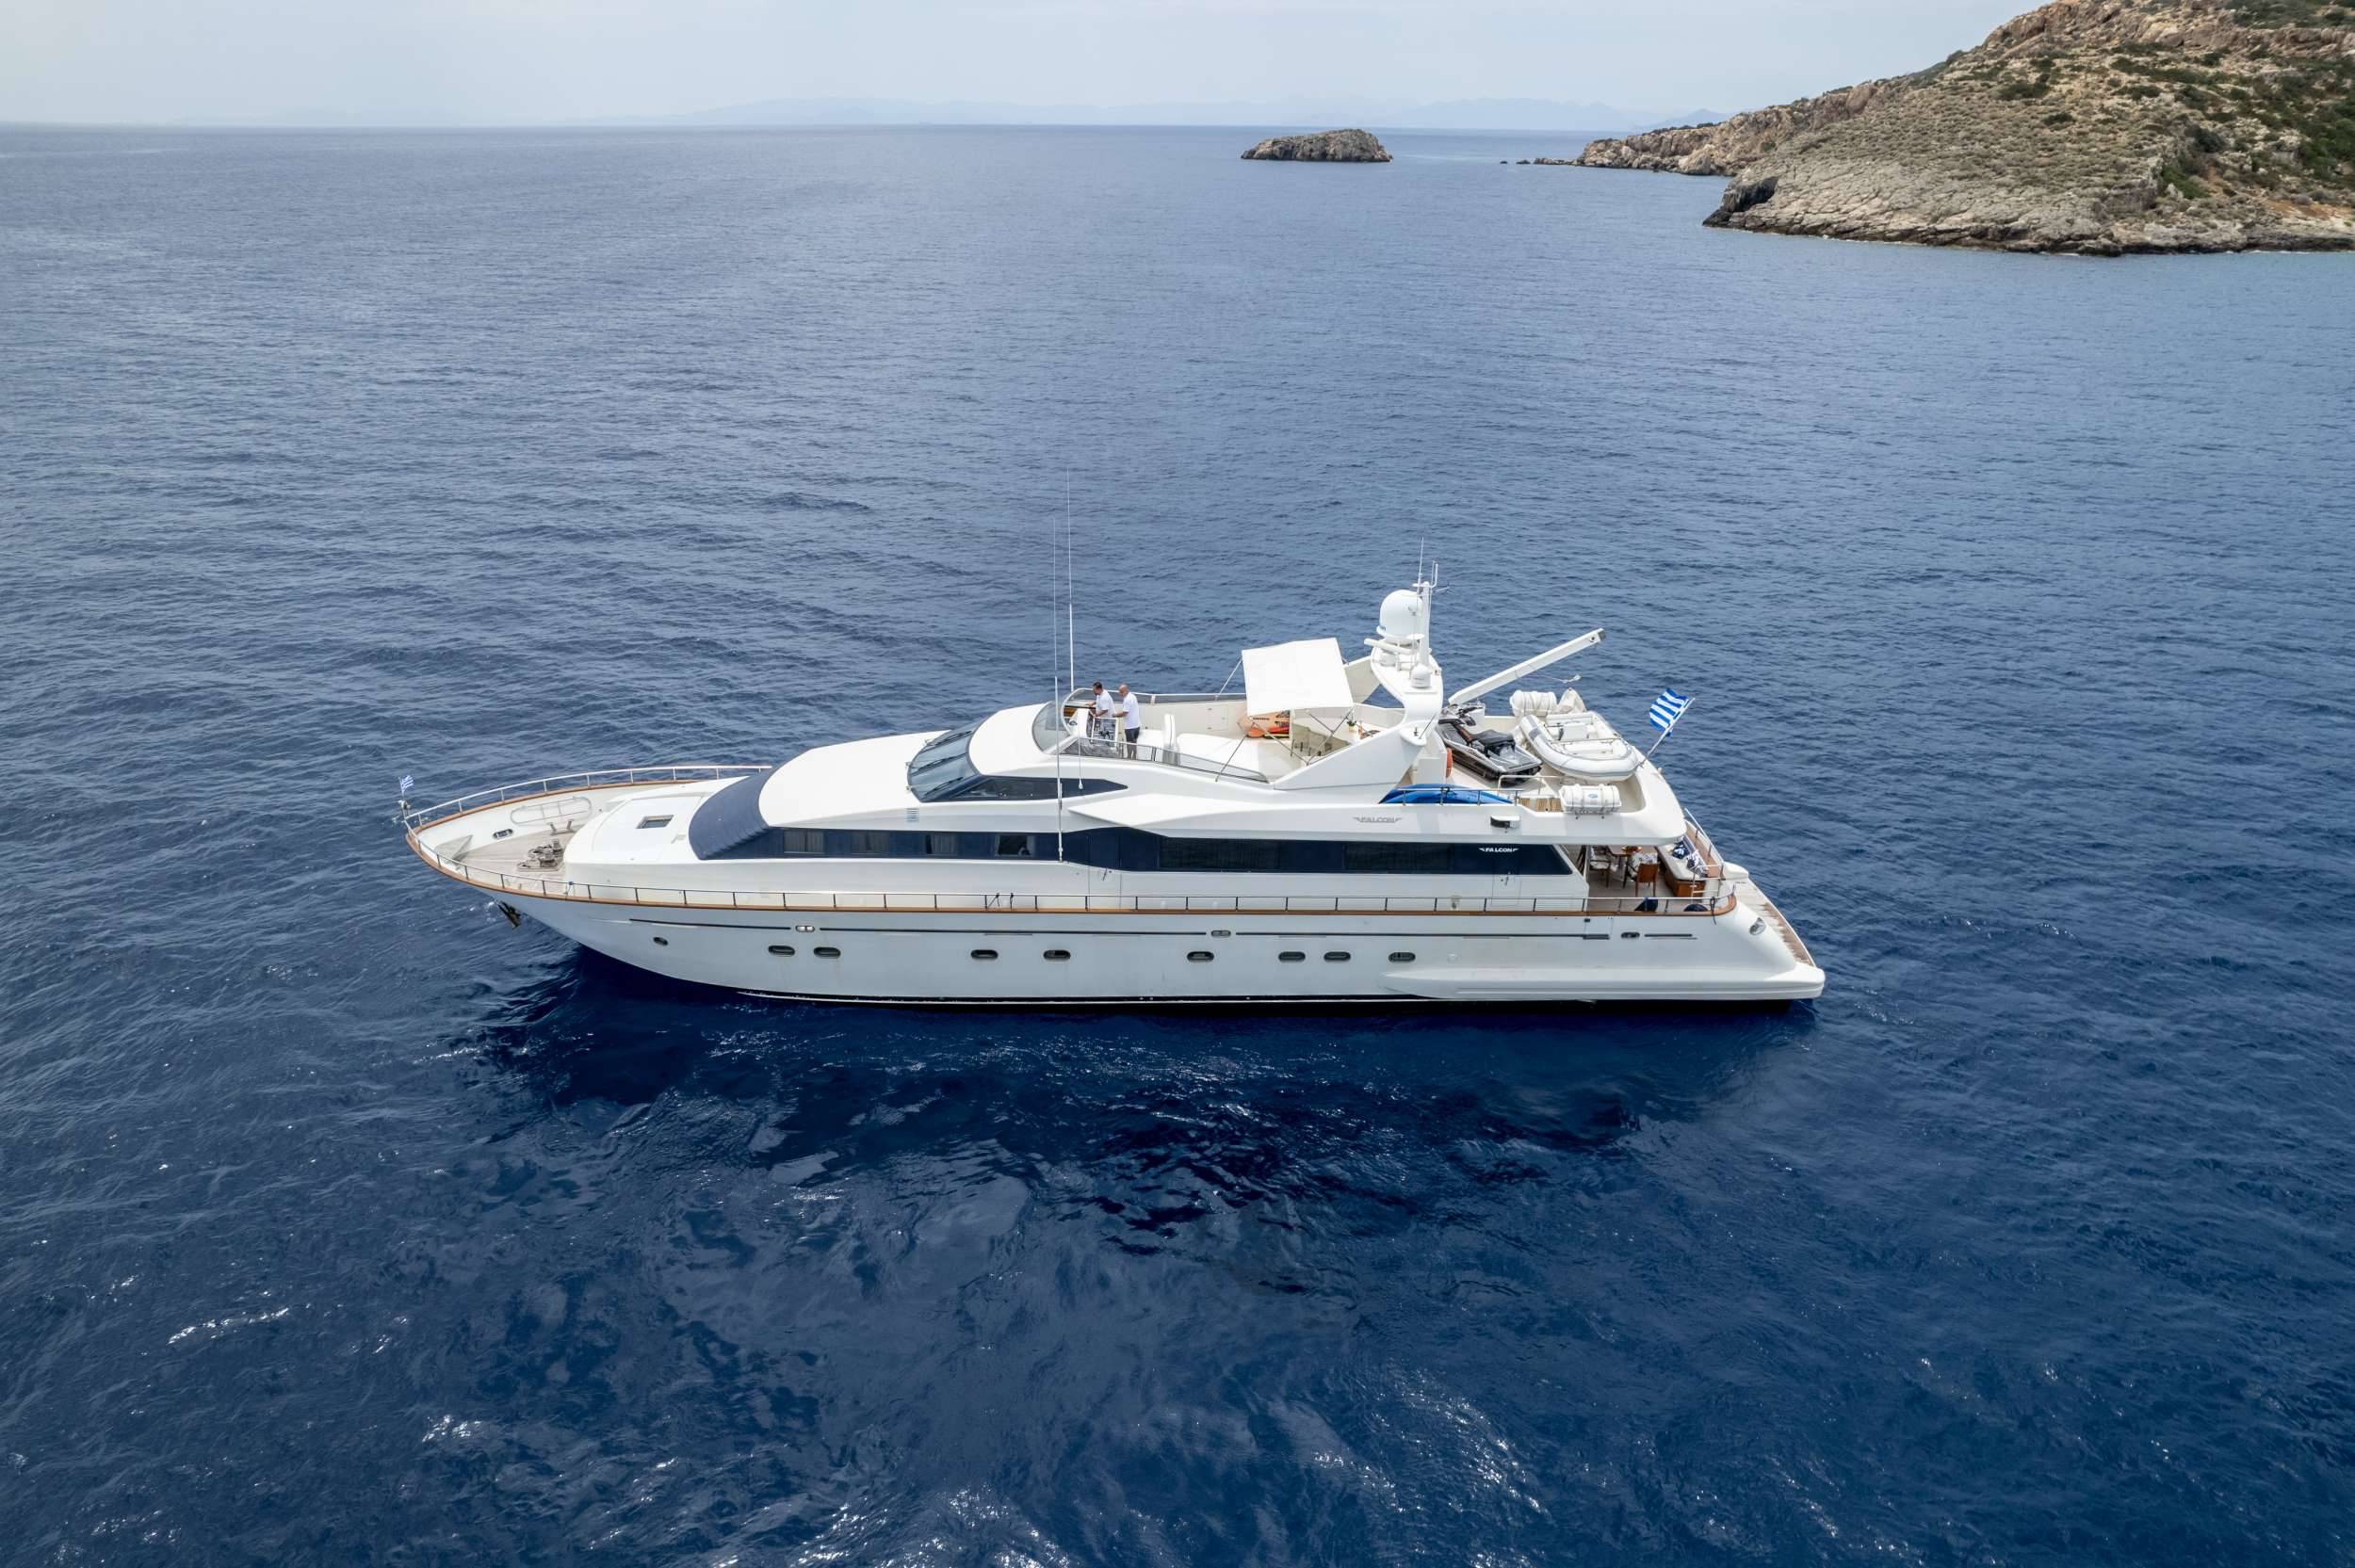 Falcon Luxury Yacht Charter in Greece